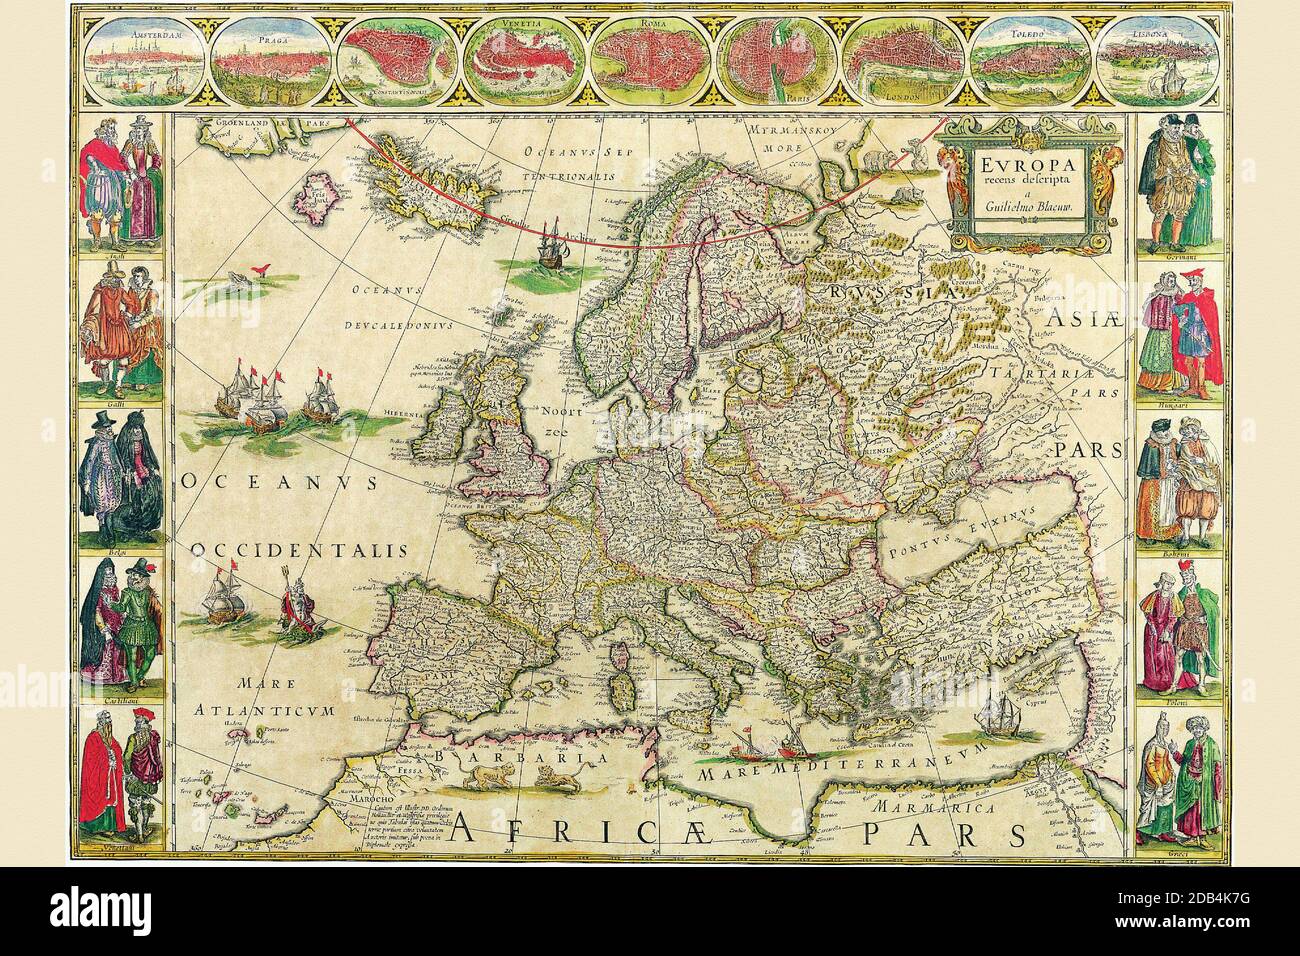 Willem Janszoon Blaeu (9 décembre 1571, Uitgeest ou Alkmaar – 21 octobre 1638, Amsterdam), également abrégé Willem Jansz. Blaeu, était un cartographe néerlandais, un fabricant et un éditeur d'atlas. Banque D'Images